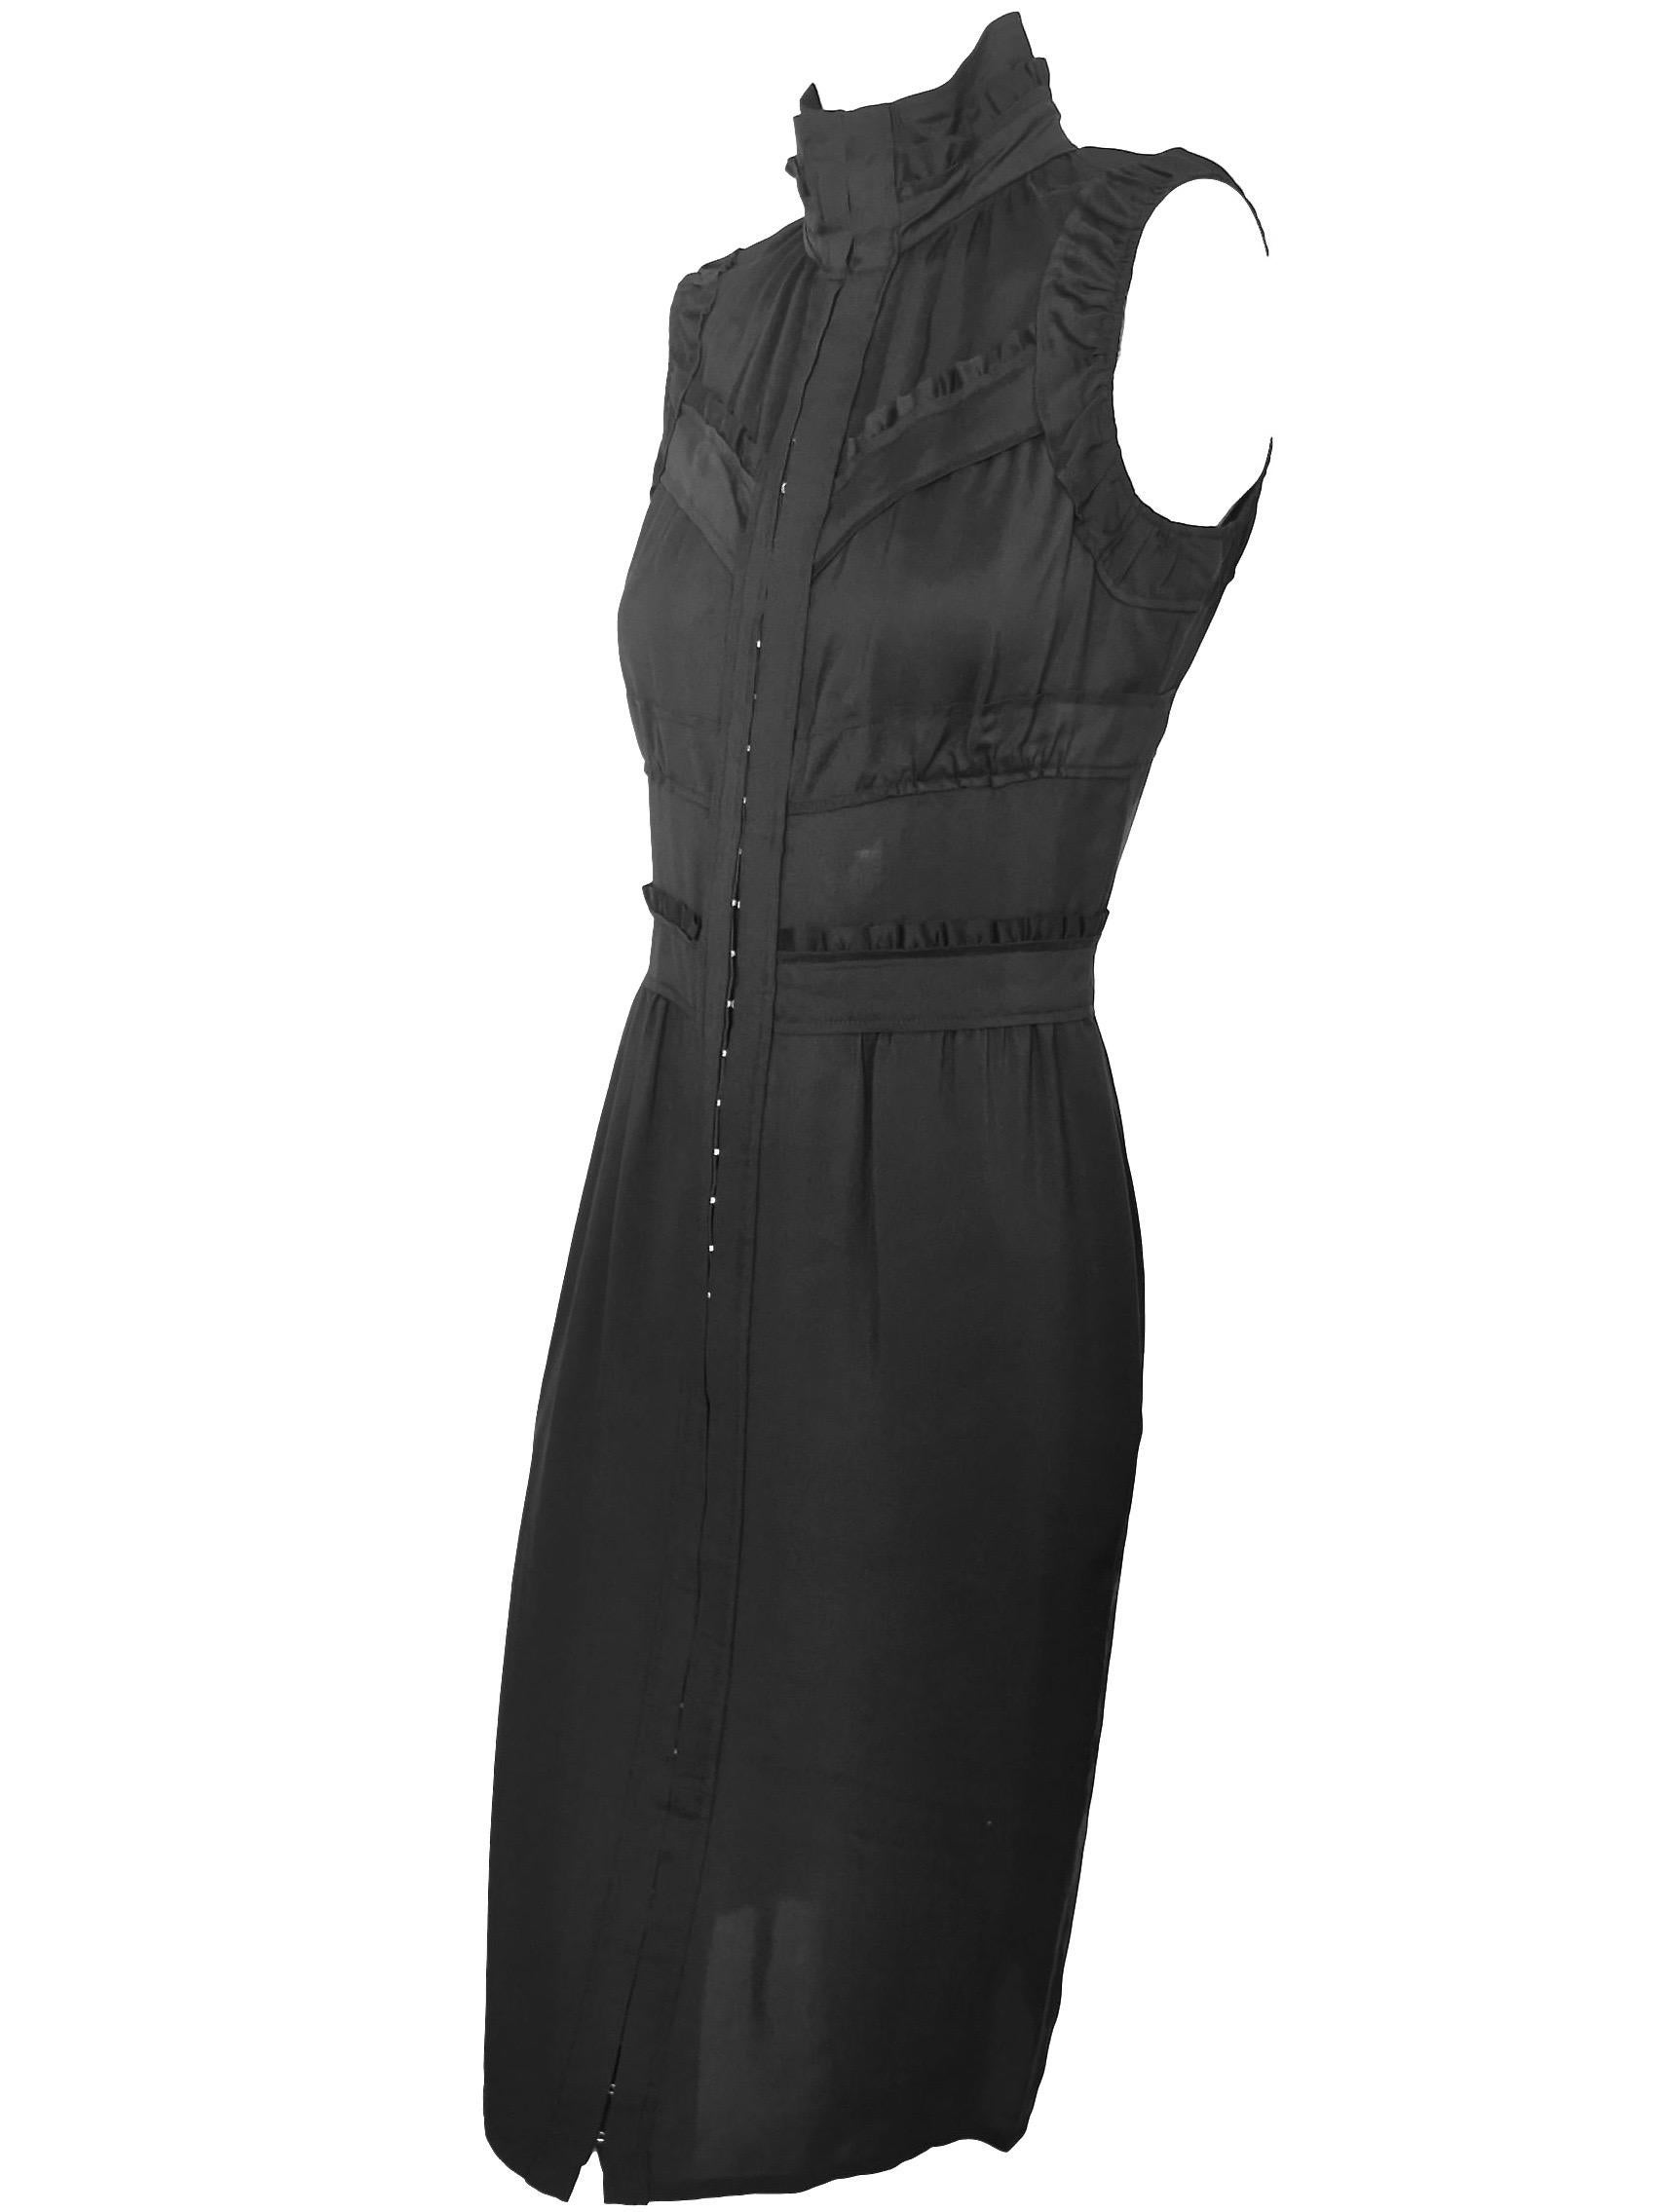 Yves Saint Laurent Tom Ford Silk Slip Dress For Sale 2